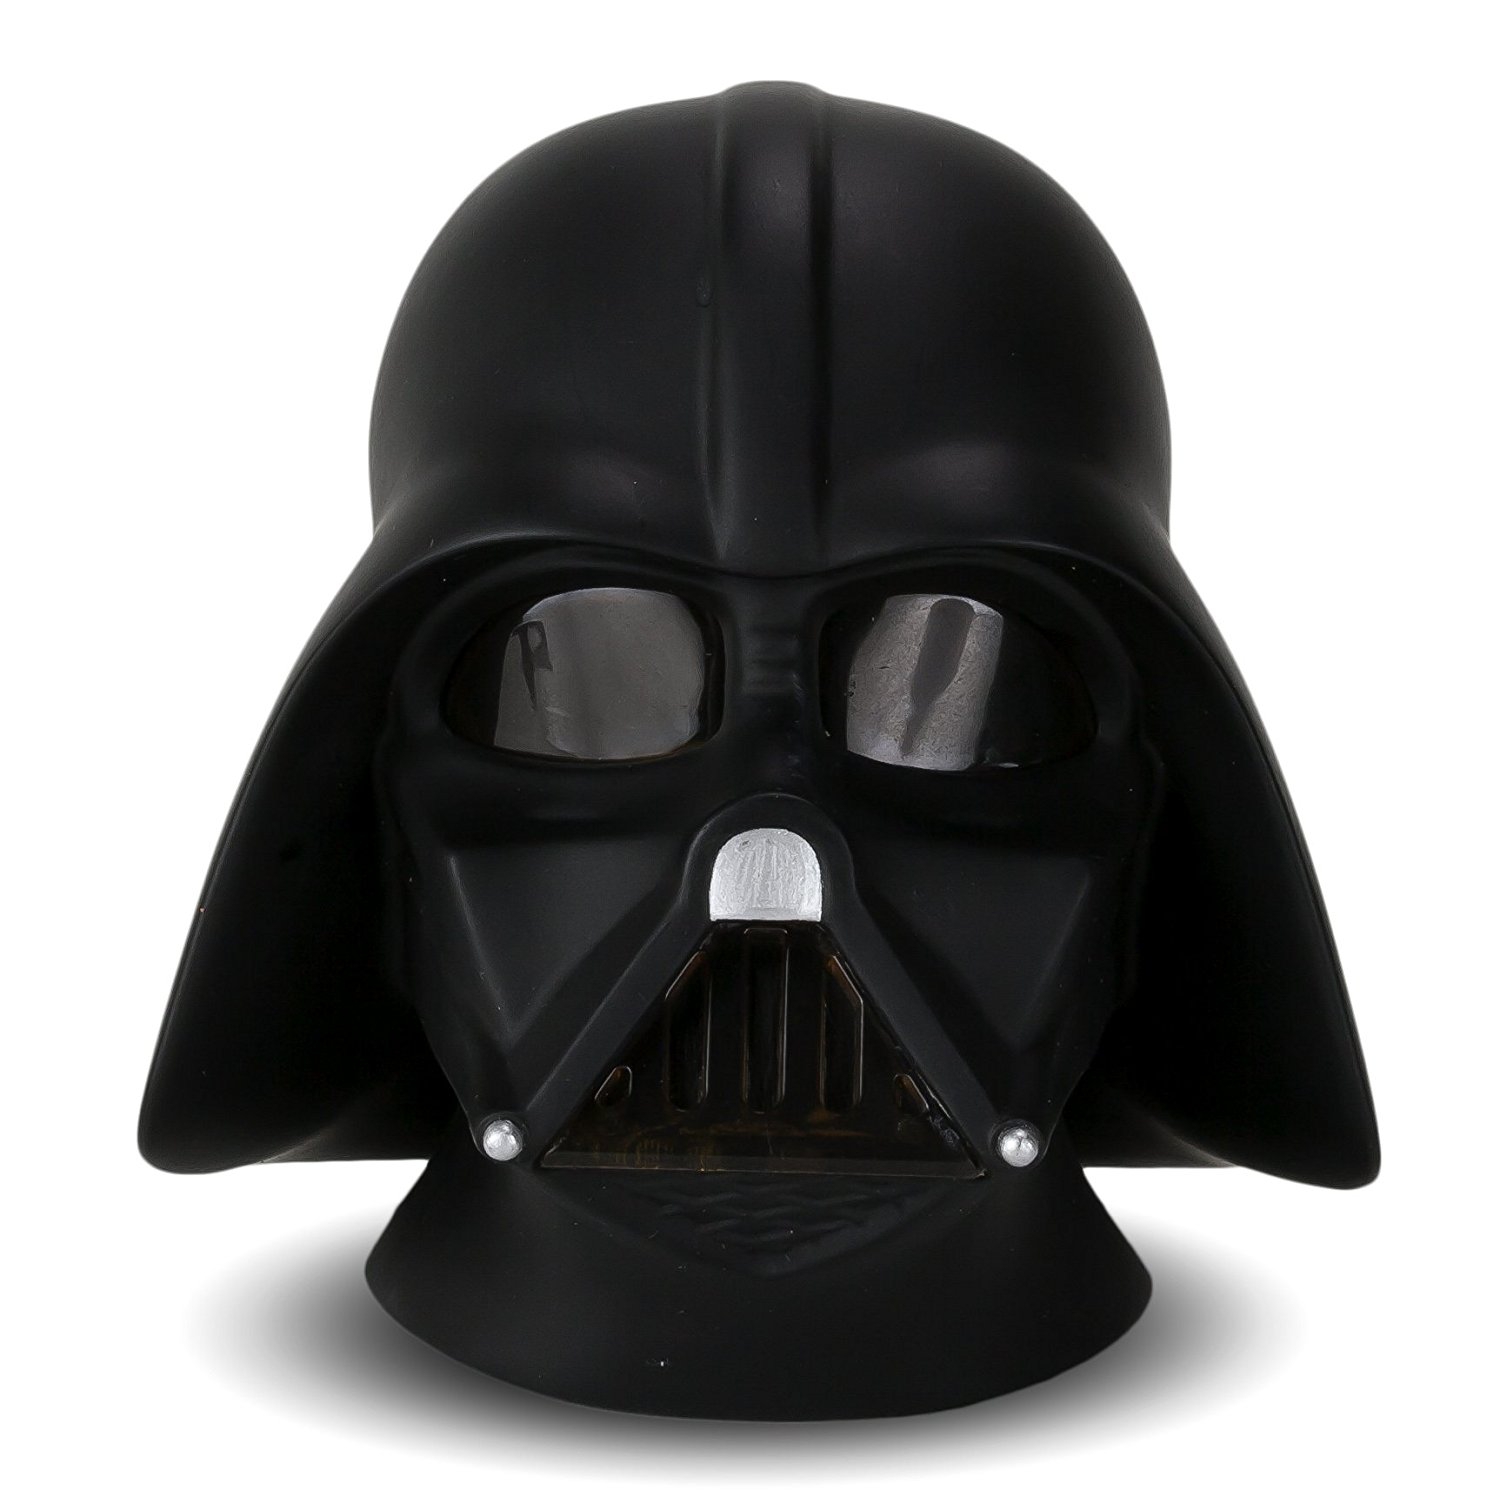 Disney Star Wars Darth Vader 'Illumi-mates' Led Light